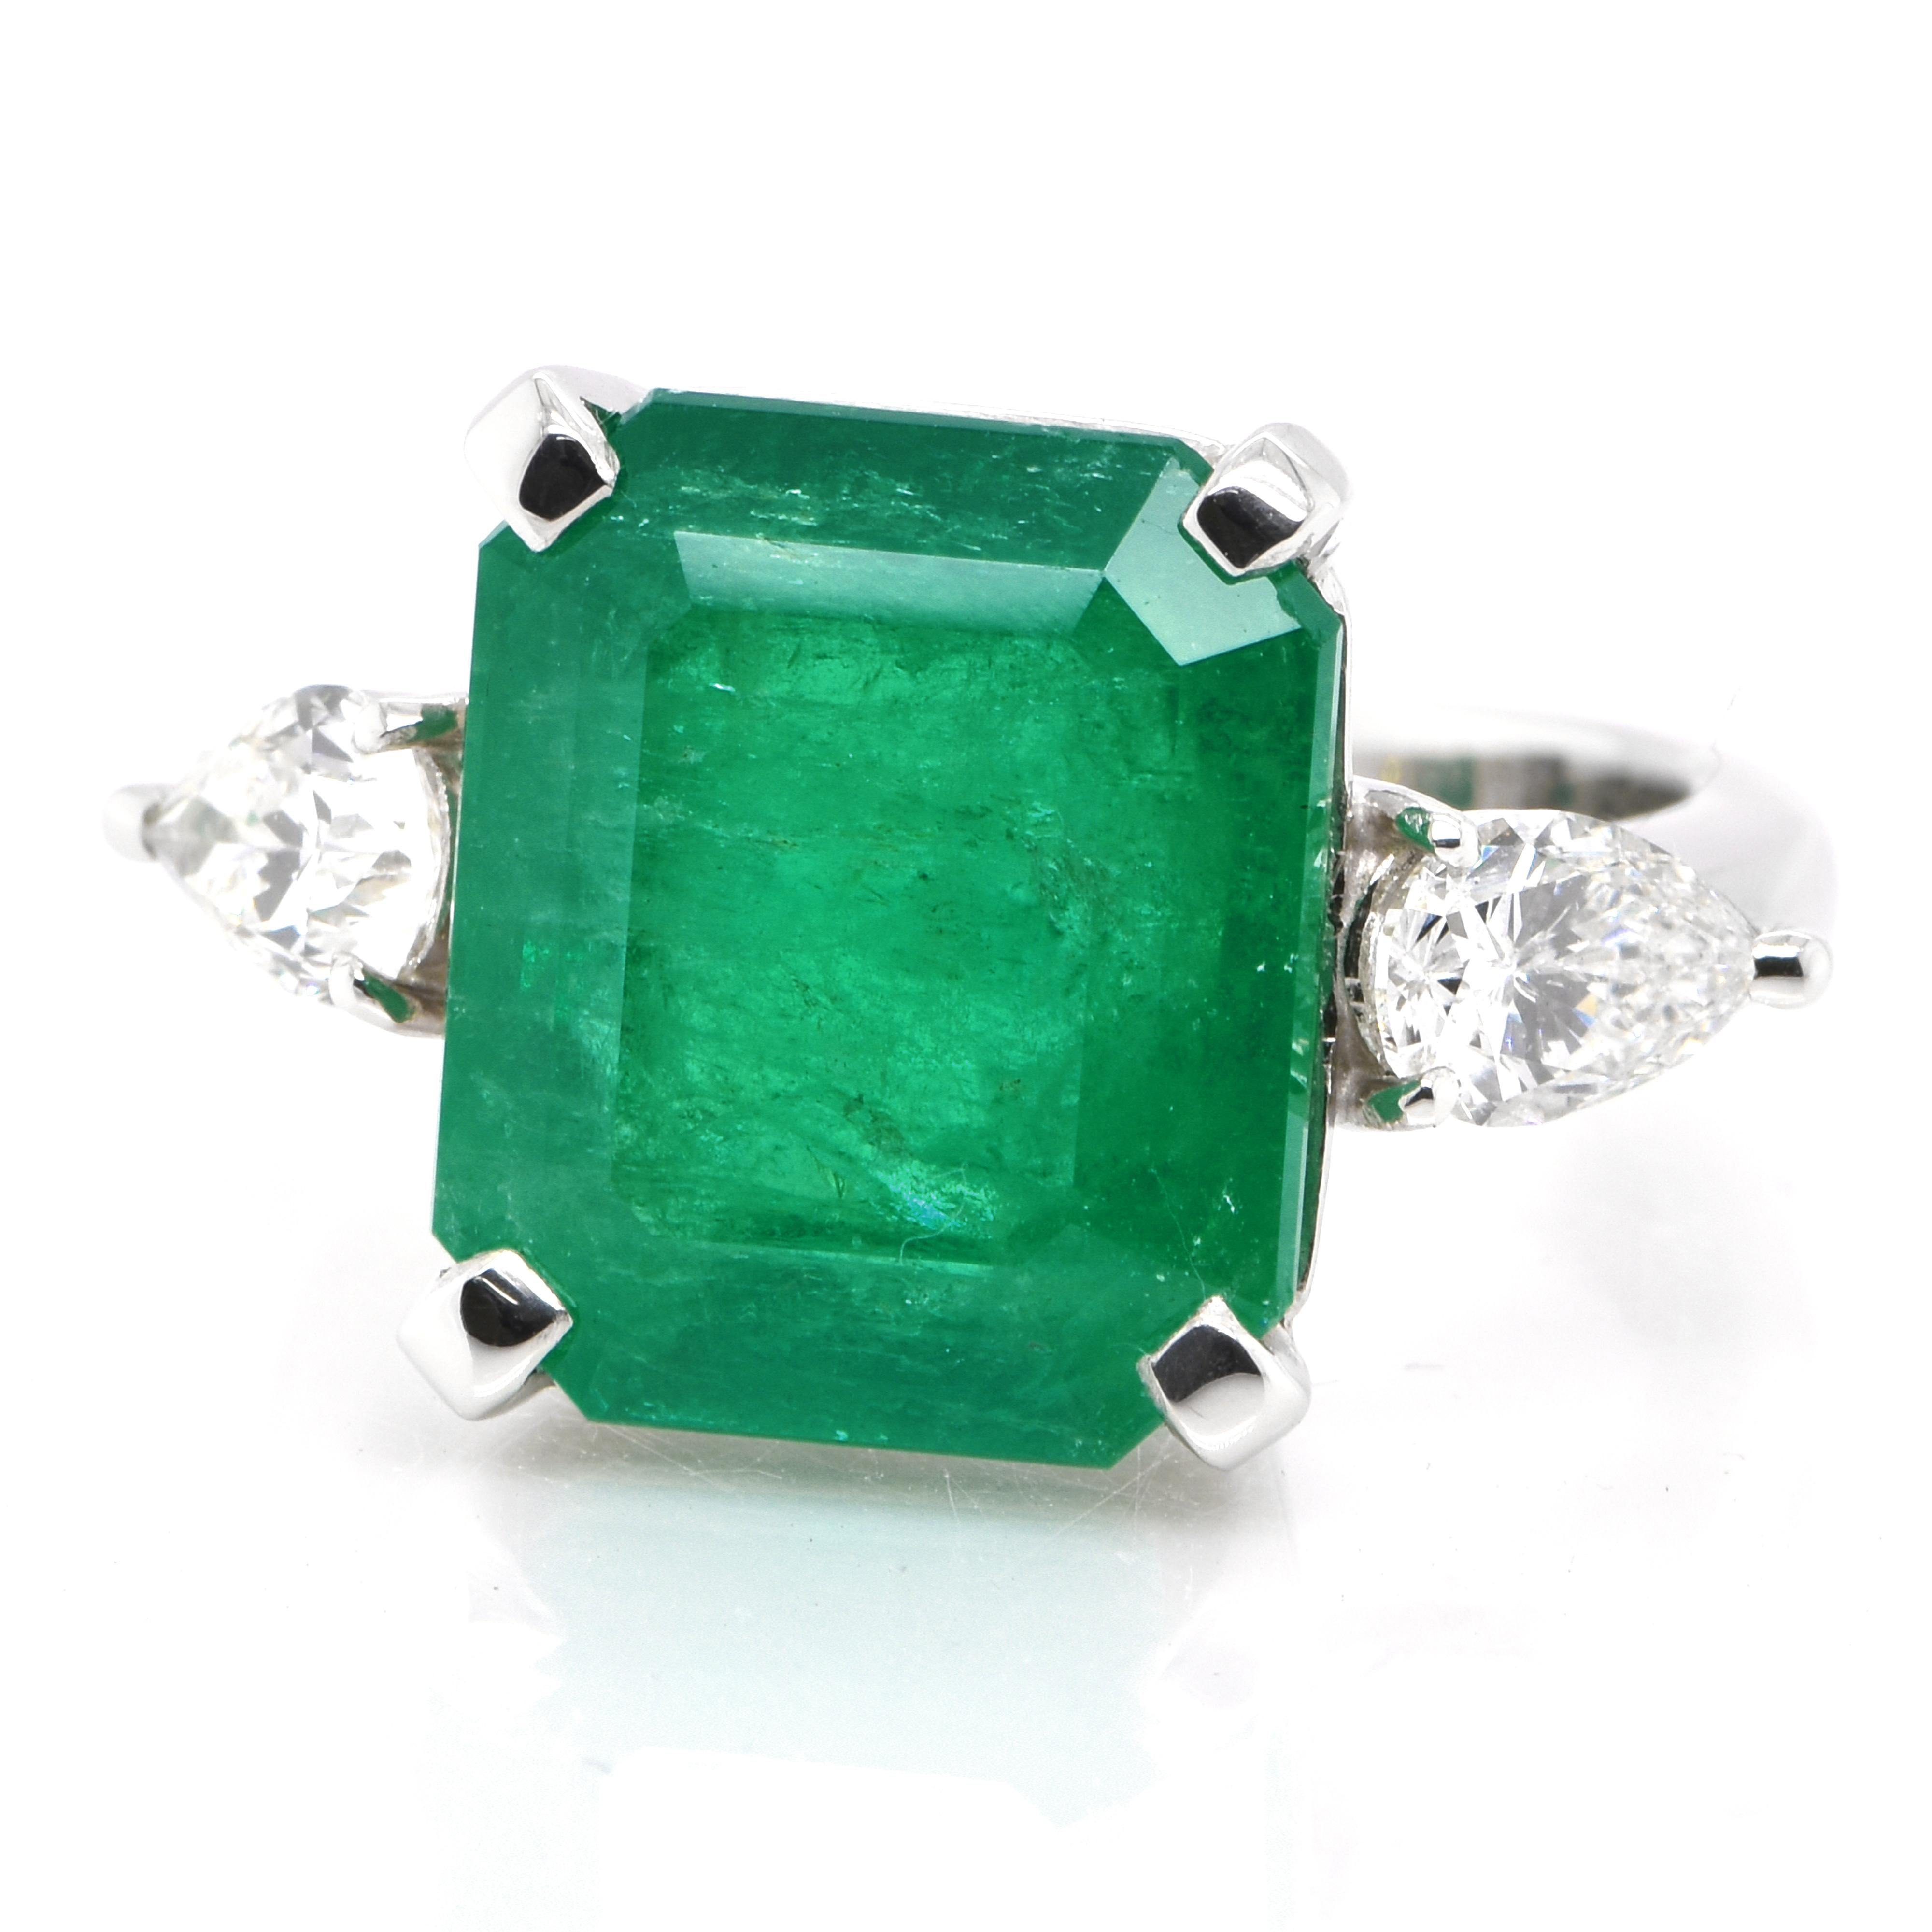 Ein atemberaubender Ring mit einem natürlichen kolumbianischen Smaragd von 8,56 Karat und 1,039 Karat Diamanten in Platin gefasst. Seit Tausenden von Jahren bewundern die Menschen das Grün des Smaragds. Smaragde werden seit jeher mit den üppigsten